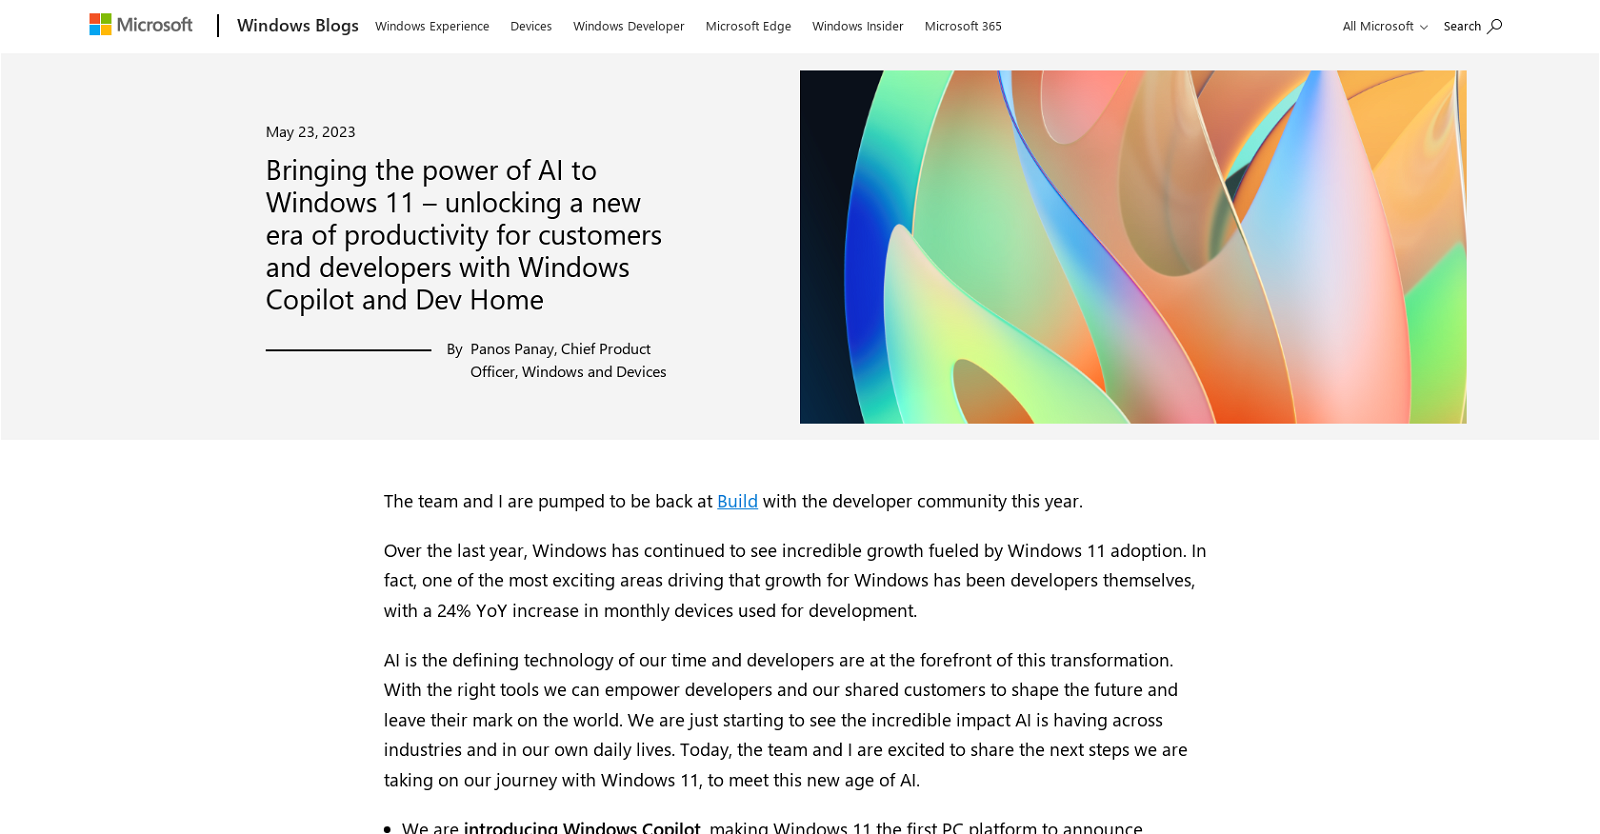 Developing for Windows 11 - Windows Developer Blog